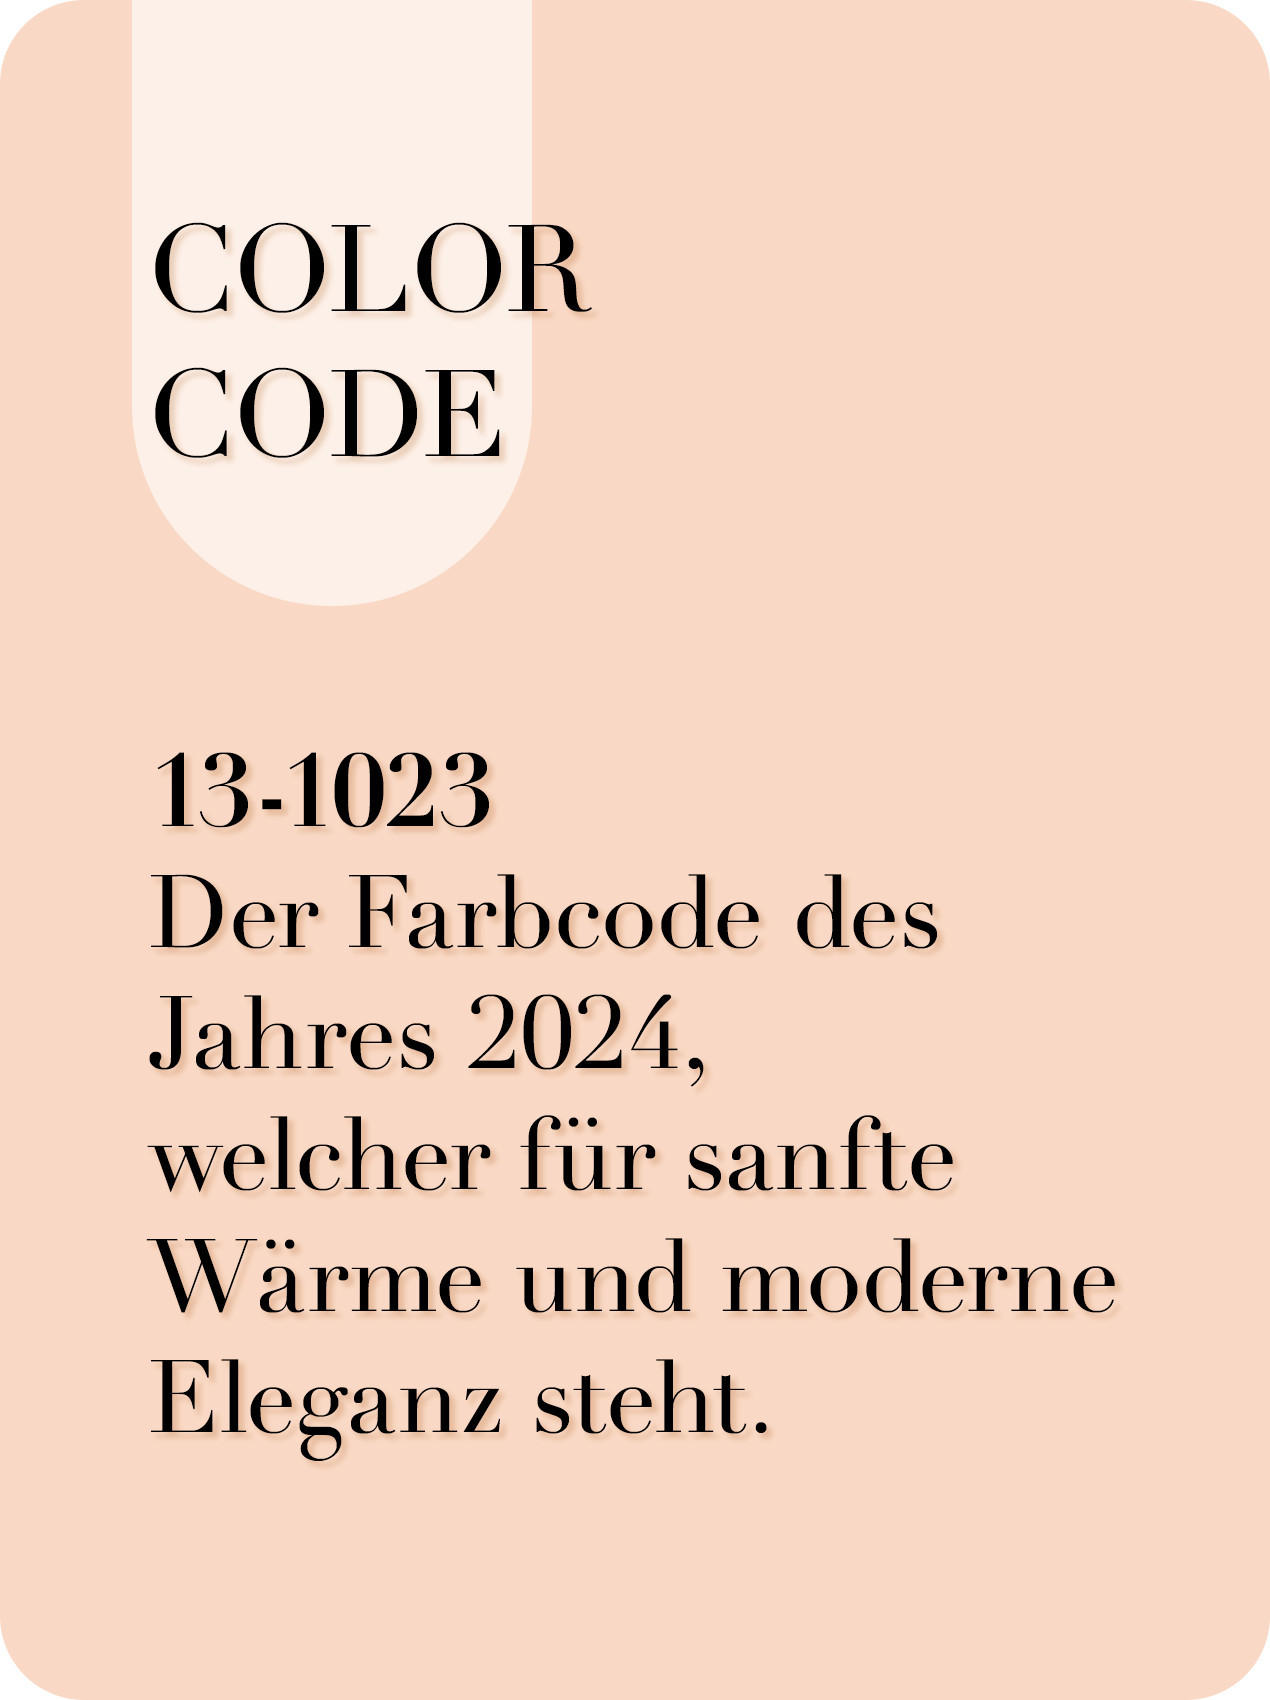 COLOR CODE - Der Farbcode des Jahres 2024 welcher für sanfte Wärme und moderne Eleganz steht.